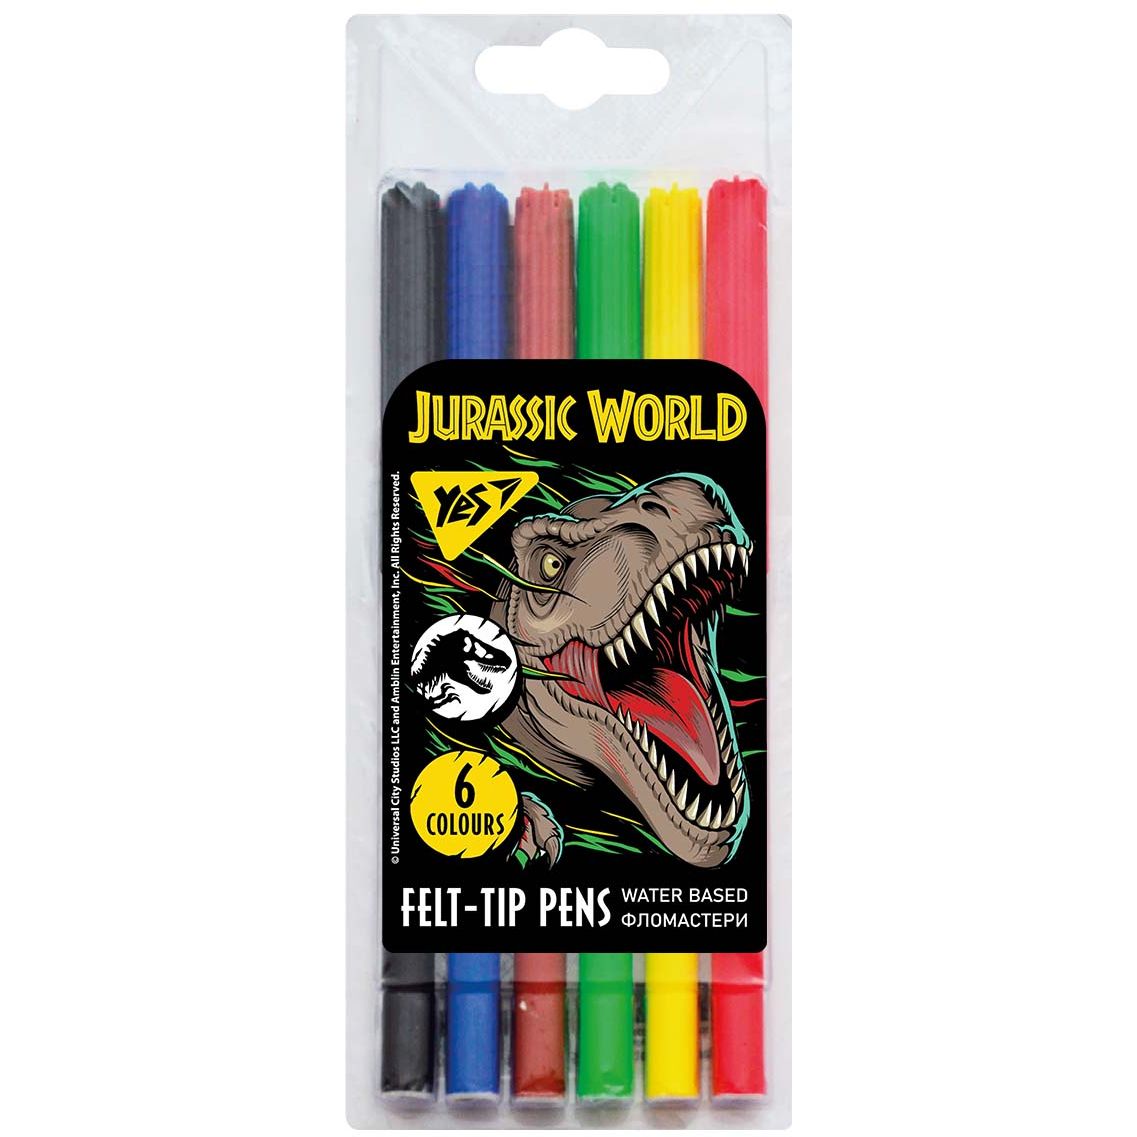 Фломастери Yes Jurassic World, 6 кольорів (650515) - фото 1